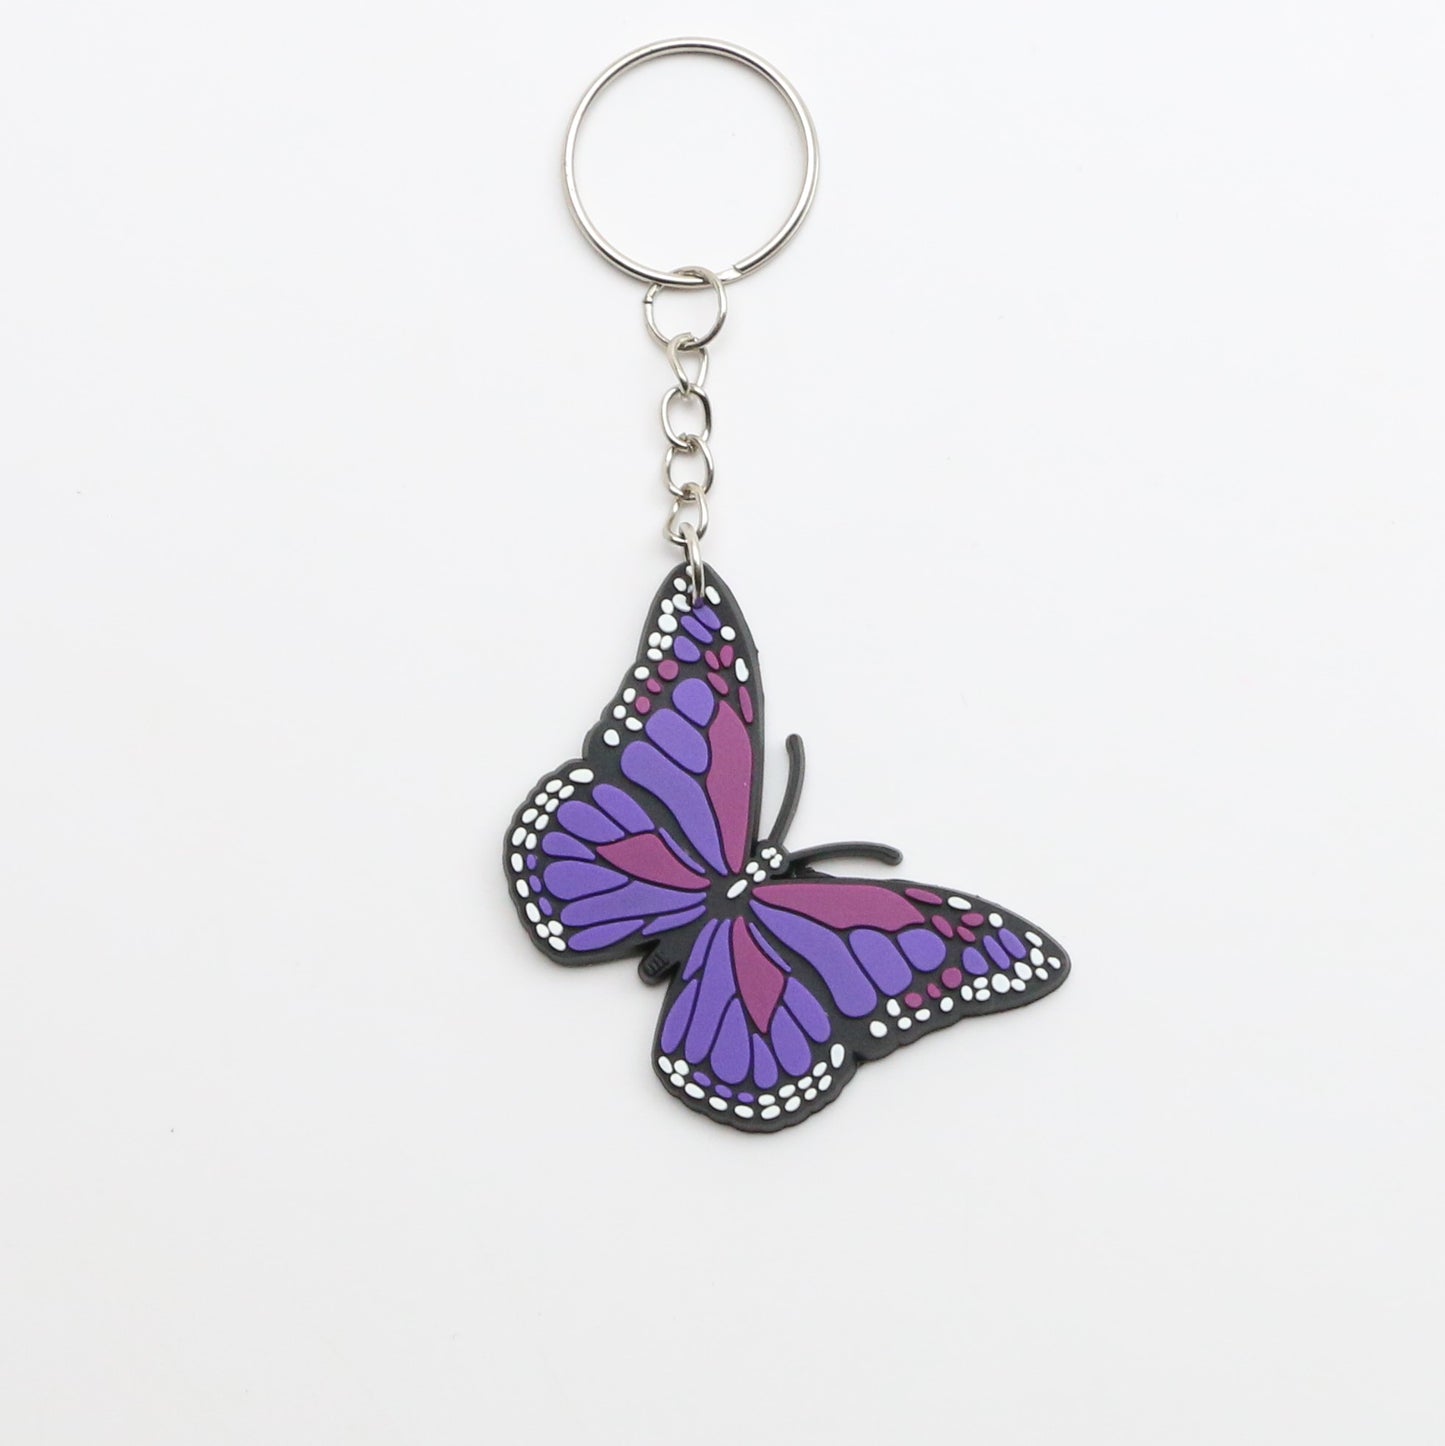 8100202K - Charm - Keychain - Butterfly - Lg. - Purple